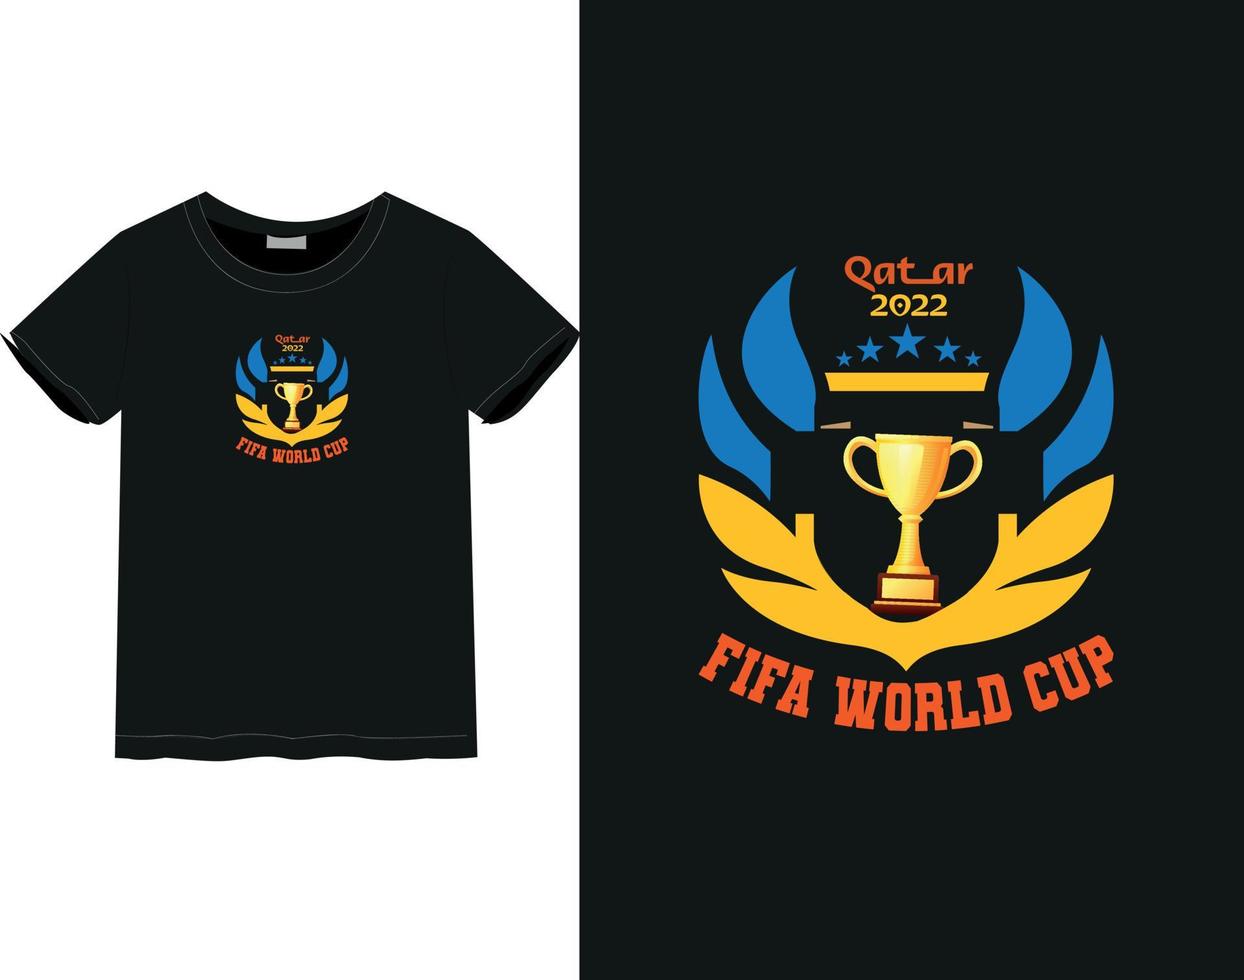 fifa värld kopp t-shirt vektor